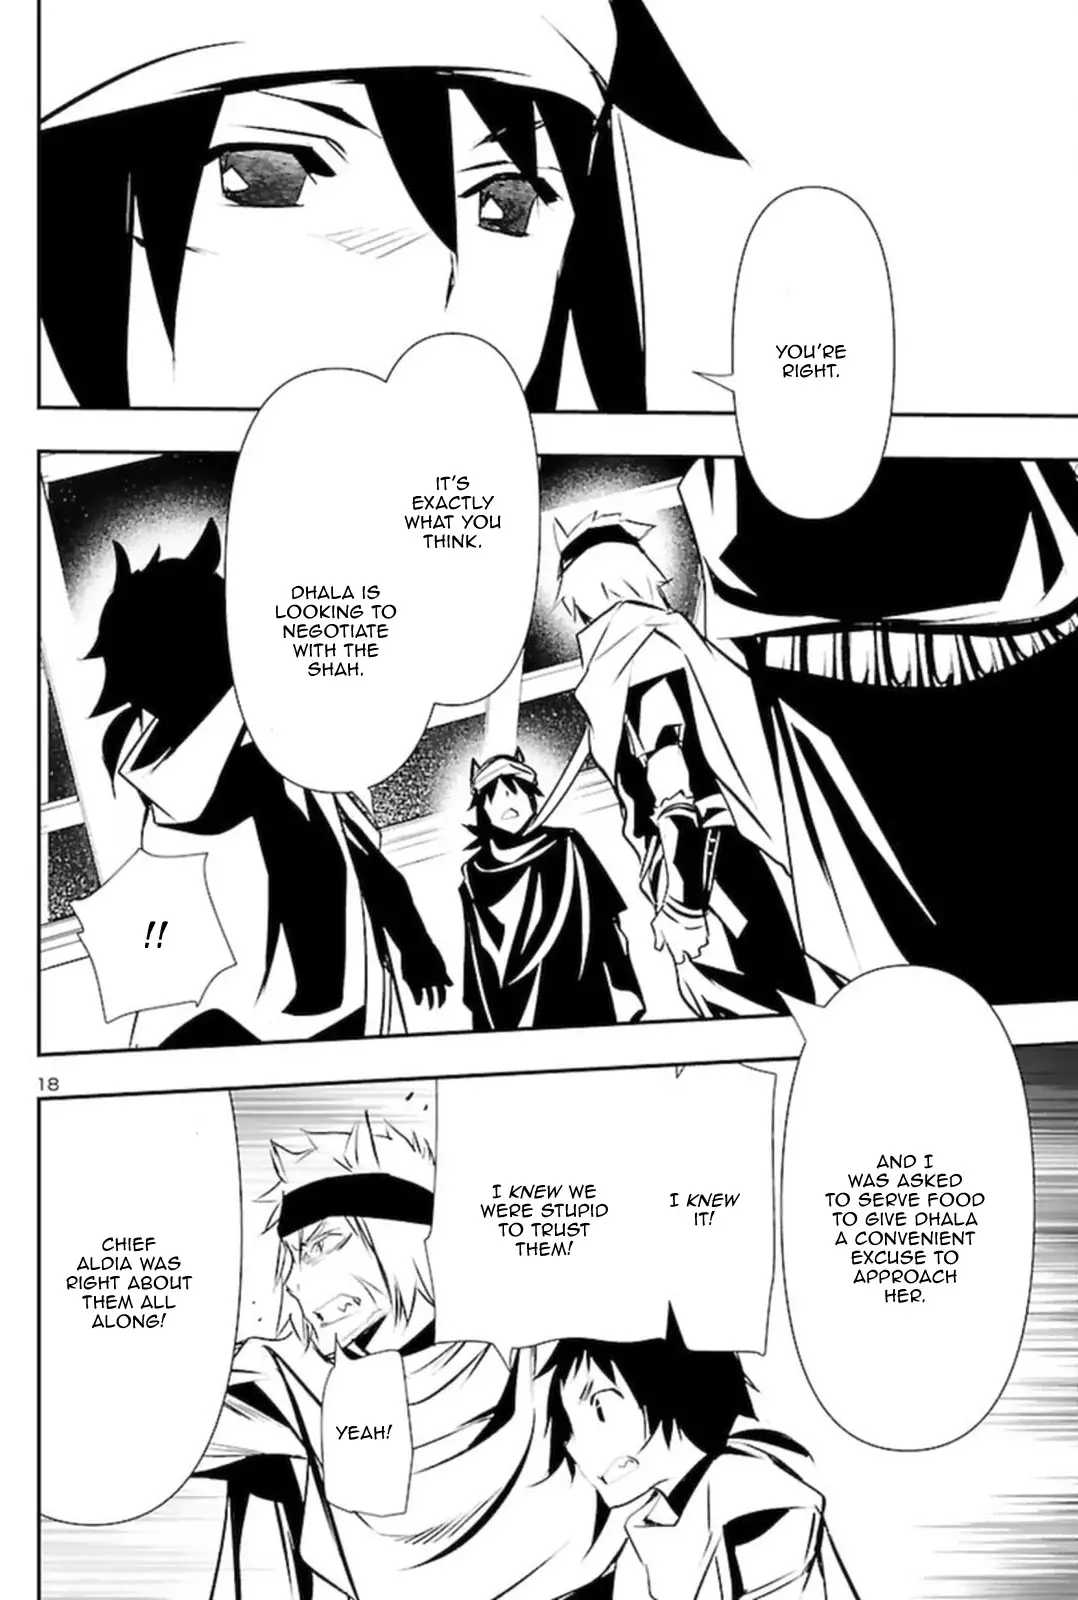 Shinju no Nectar - 57 page 18